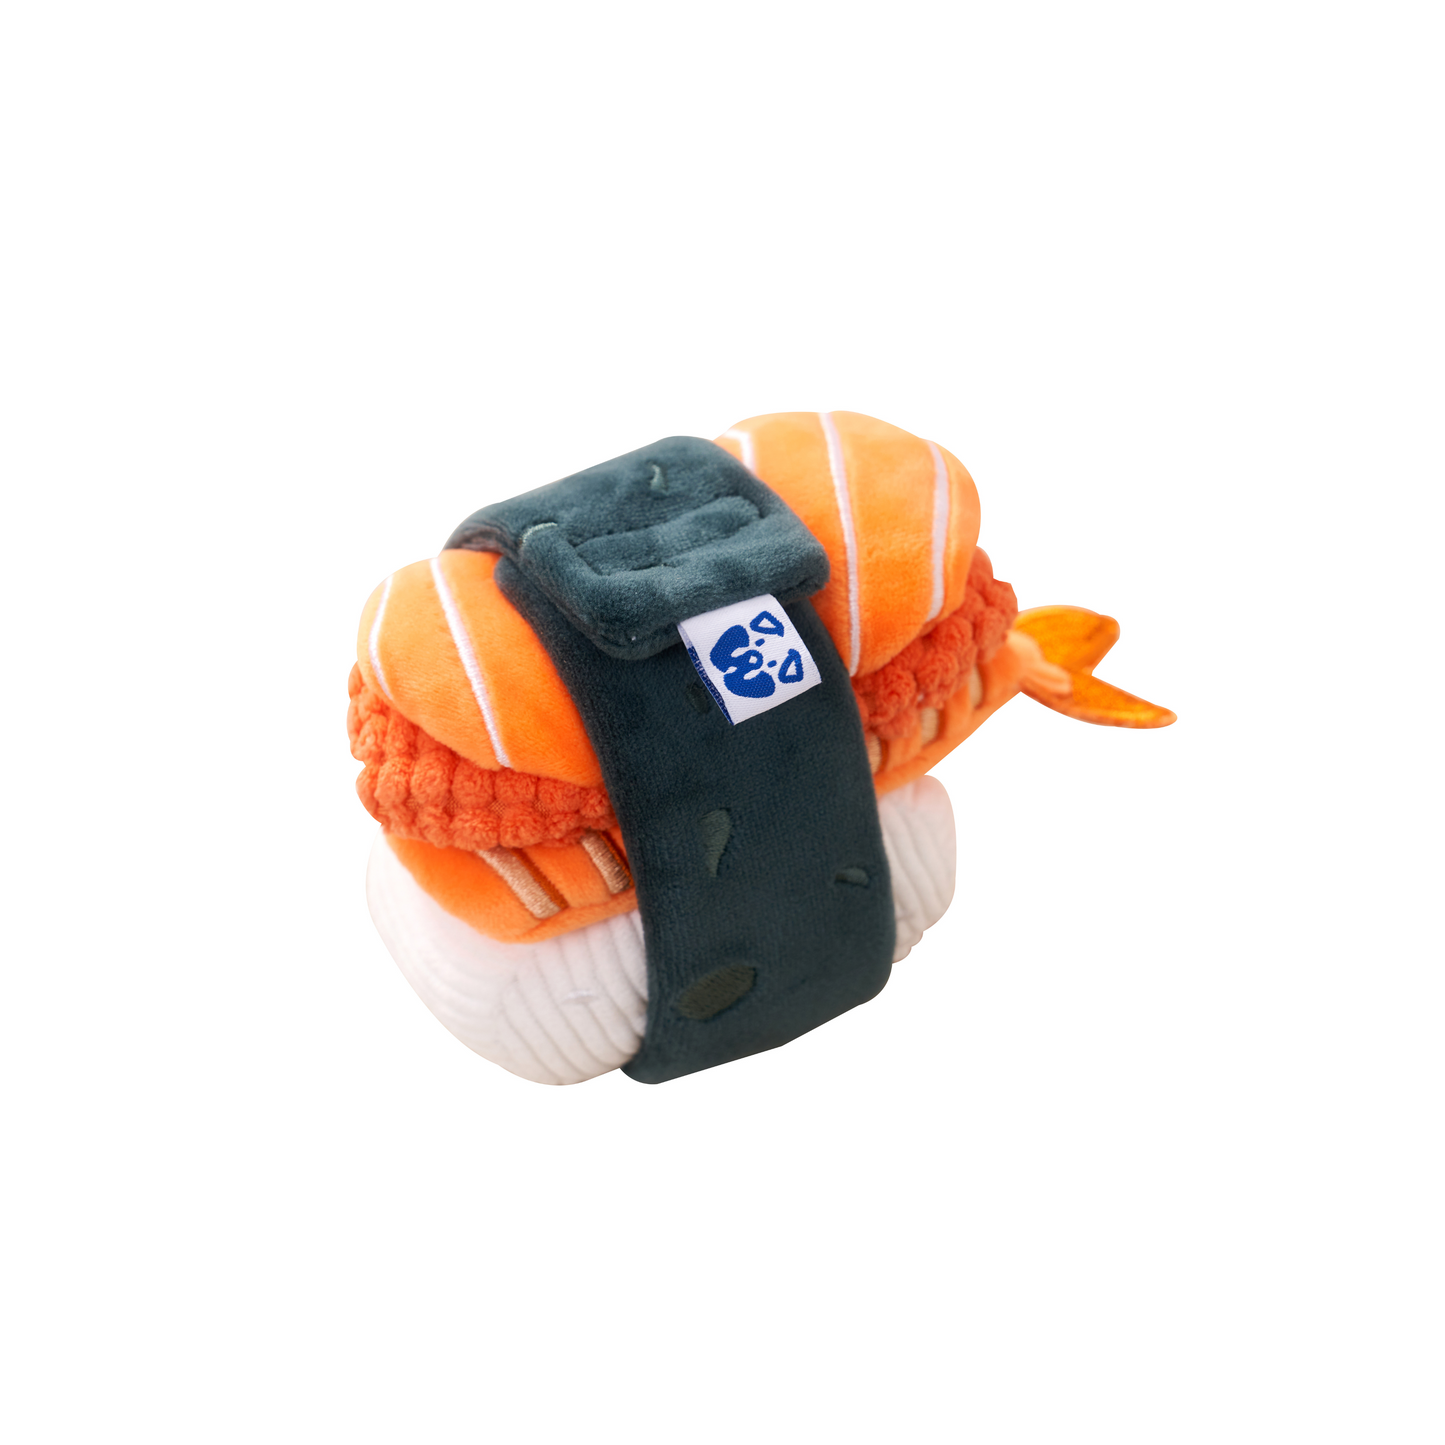 Pawty Dog Toys Sushi Set Plush Crinkle Interactive Toy